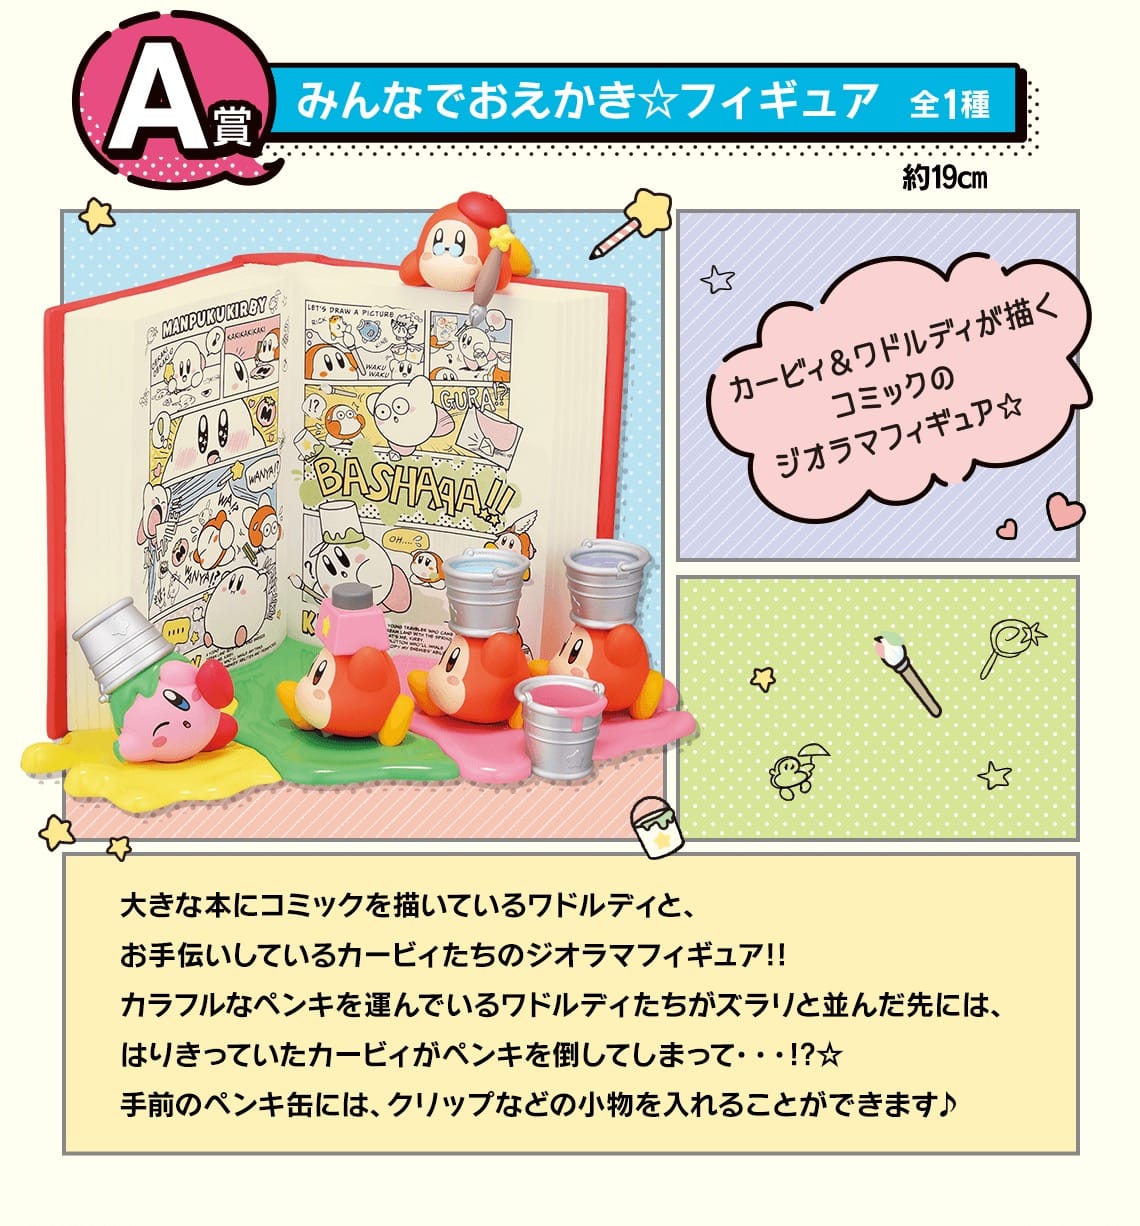 星のカービィ コミックな一番くじ 10月14日よりファミマ他にて発売!